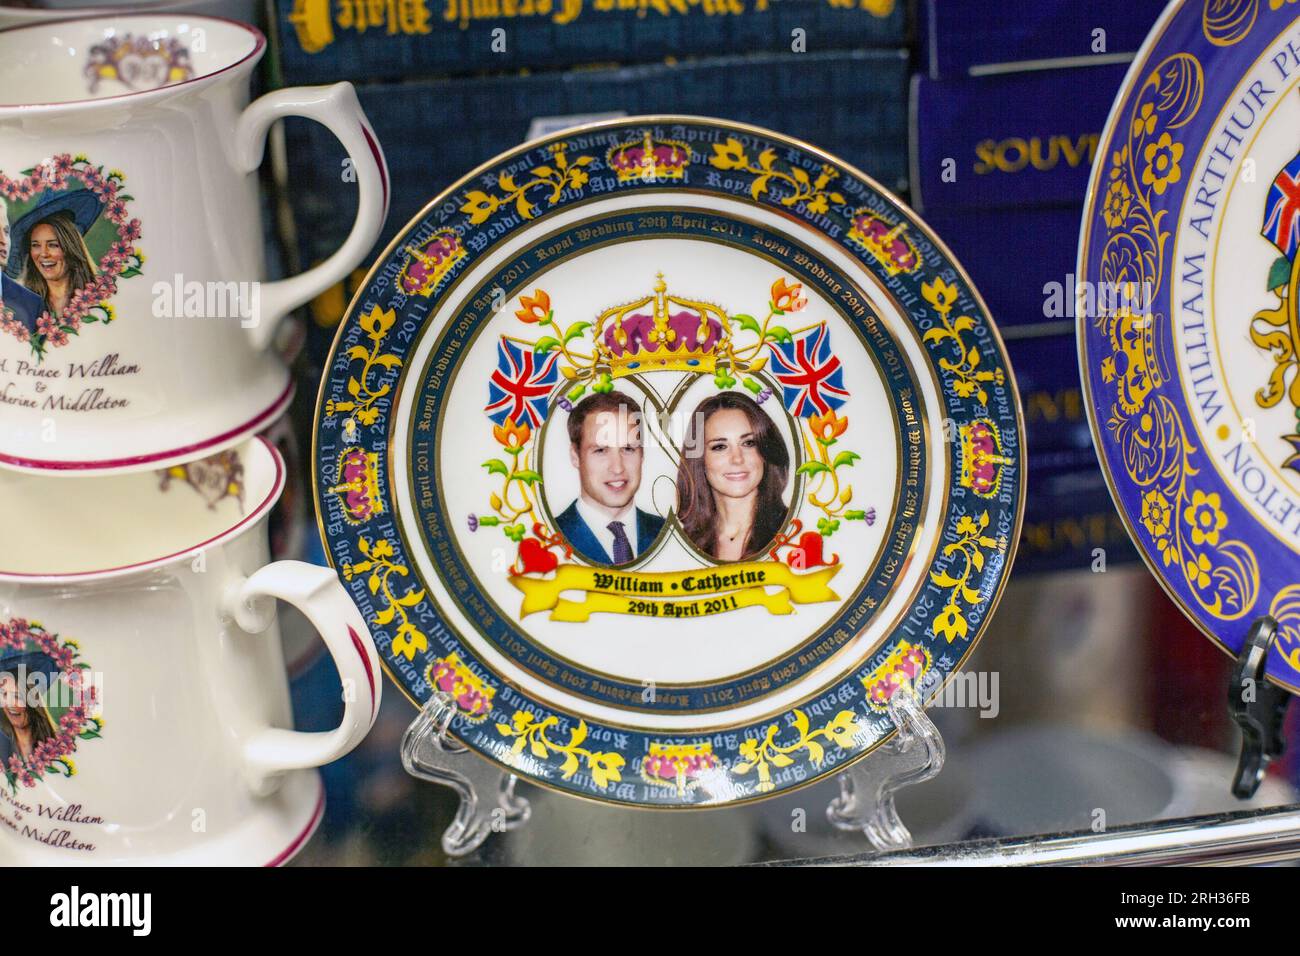 Il piatto con il ritratto di Caterina, duchessa di Cambridge, e suo marito il principe William è esposto in un negozio di souvenir a Londra, Regno Unito Foto Stock